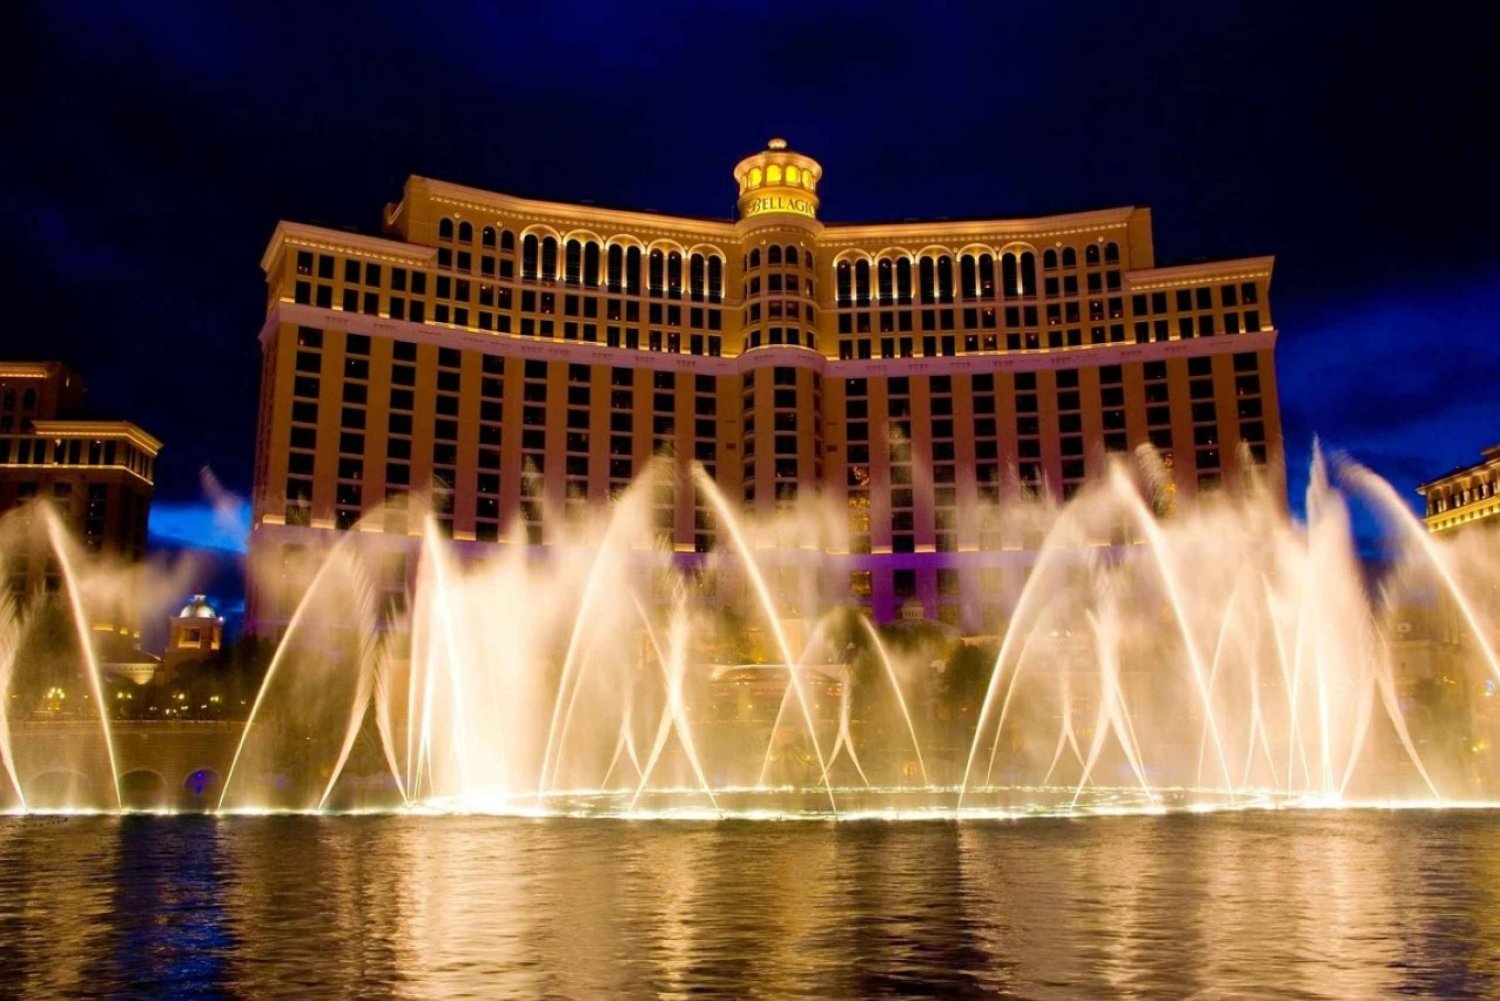 Las Vegas: City tour noturno com serviço de busca no hotel